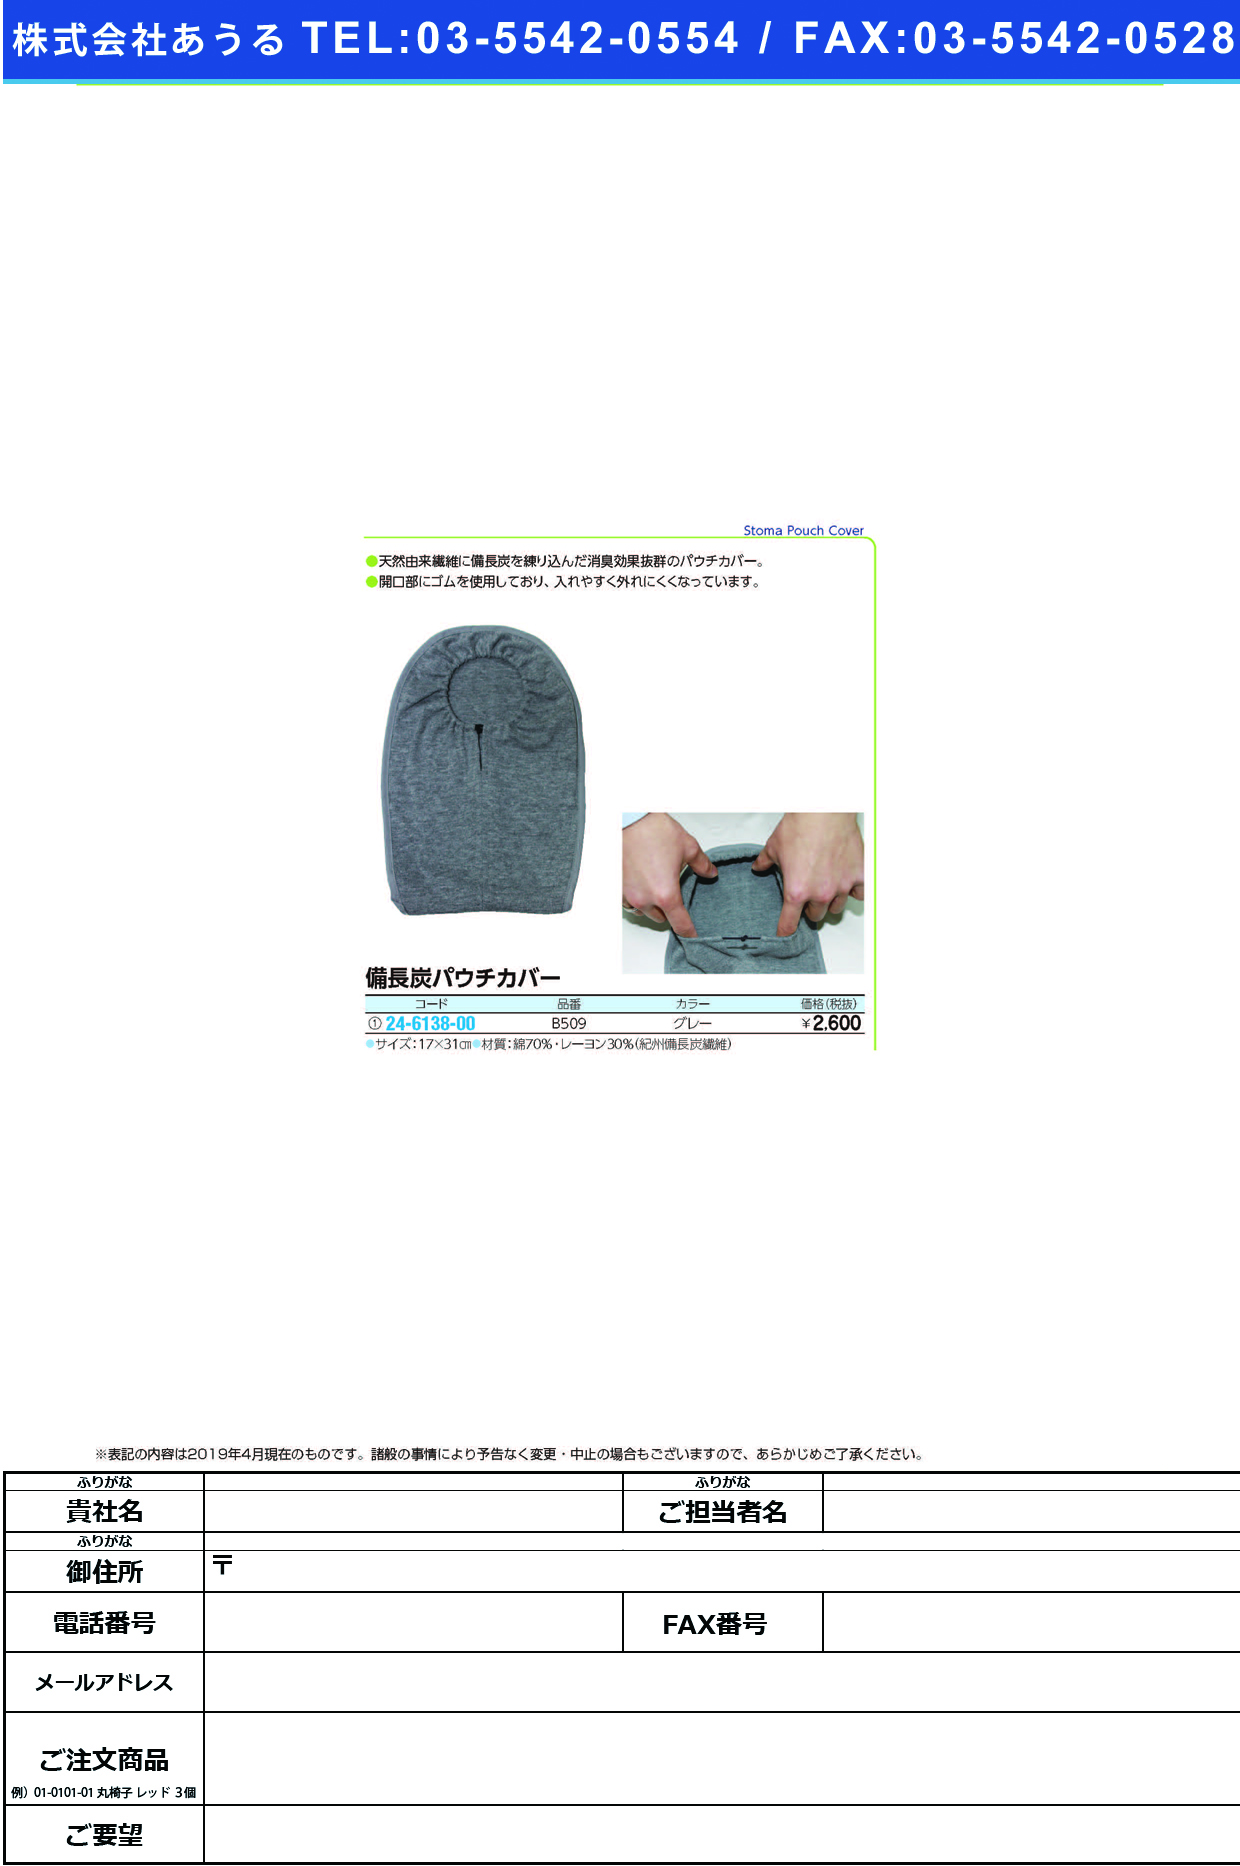 (24-6138-00)備長炭パウチカバー B509(ｸﾞﾚｰ) ﾋﾞﾝﾁｮｳﾀﾝﾊﾟｳﾁｶﾊﾞｰ【1枚単位】【2019年カタログ商品】